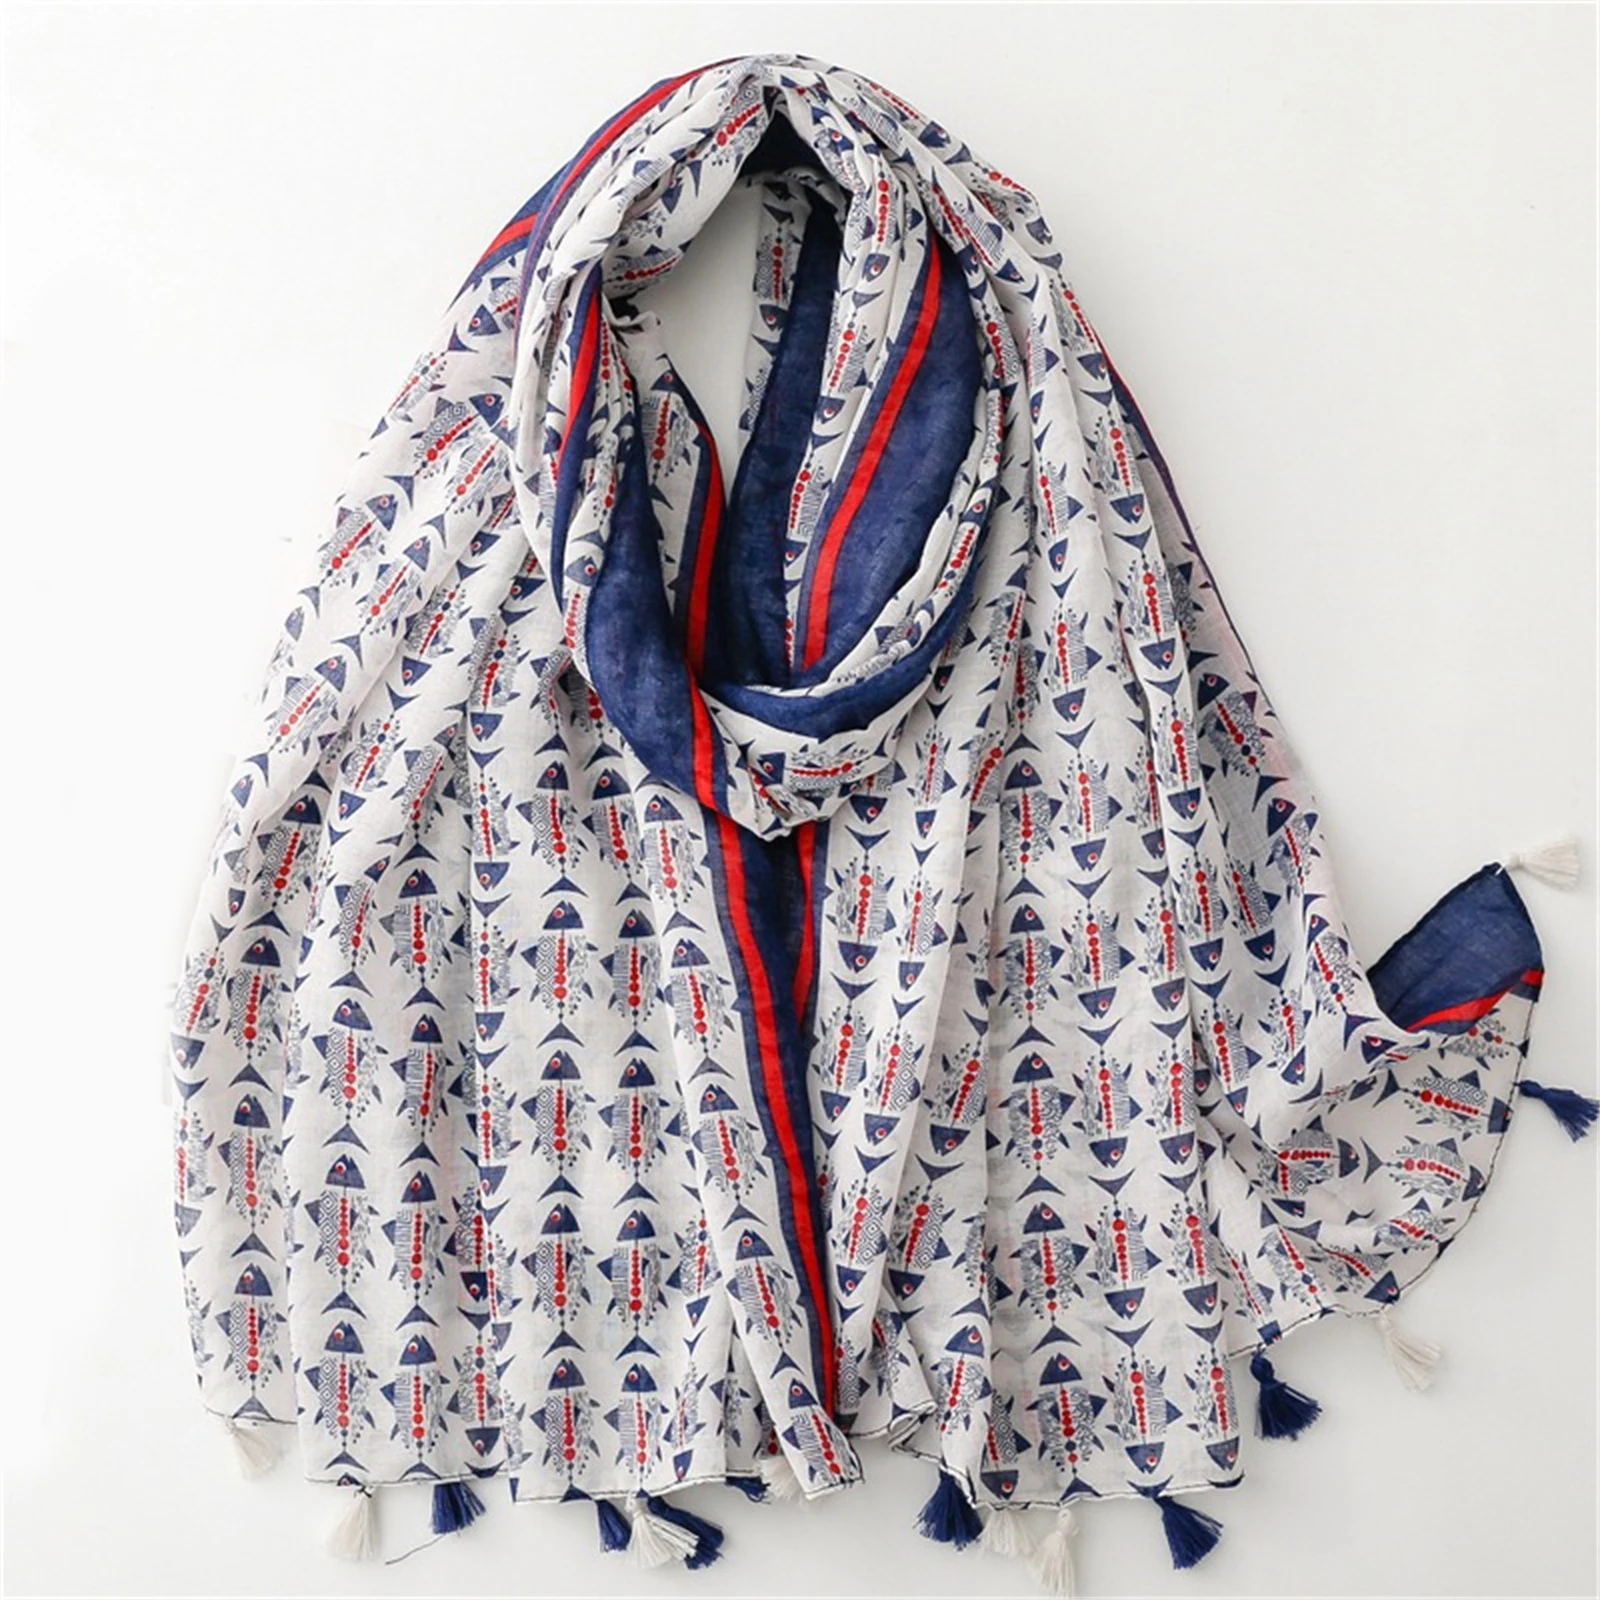 

180 * 85cm Muslim Headscarf, Female Style Windproof Tassels Shawls The Four Seasons New Bandanna Fashion Print Warm Beach Towel,